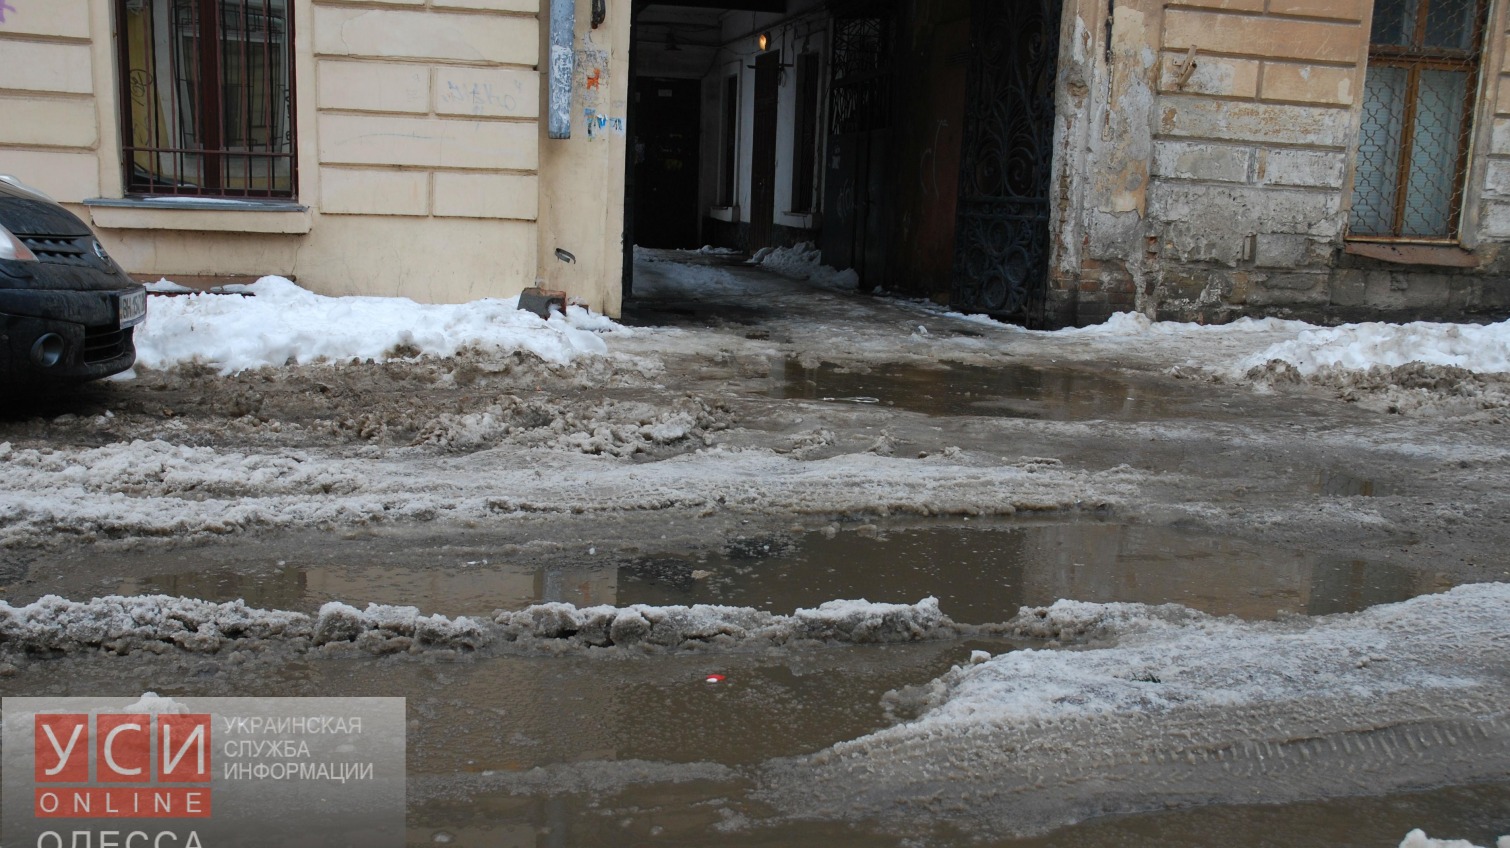 Двенадцатый день стихии в Одессе (фото) «фото»